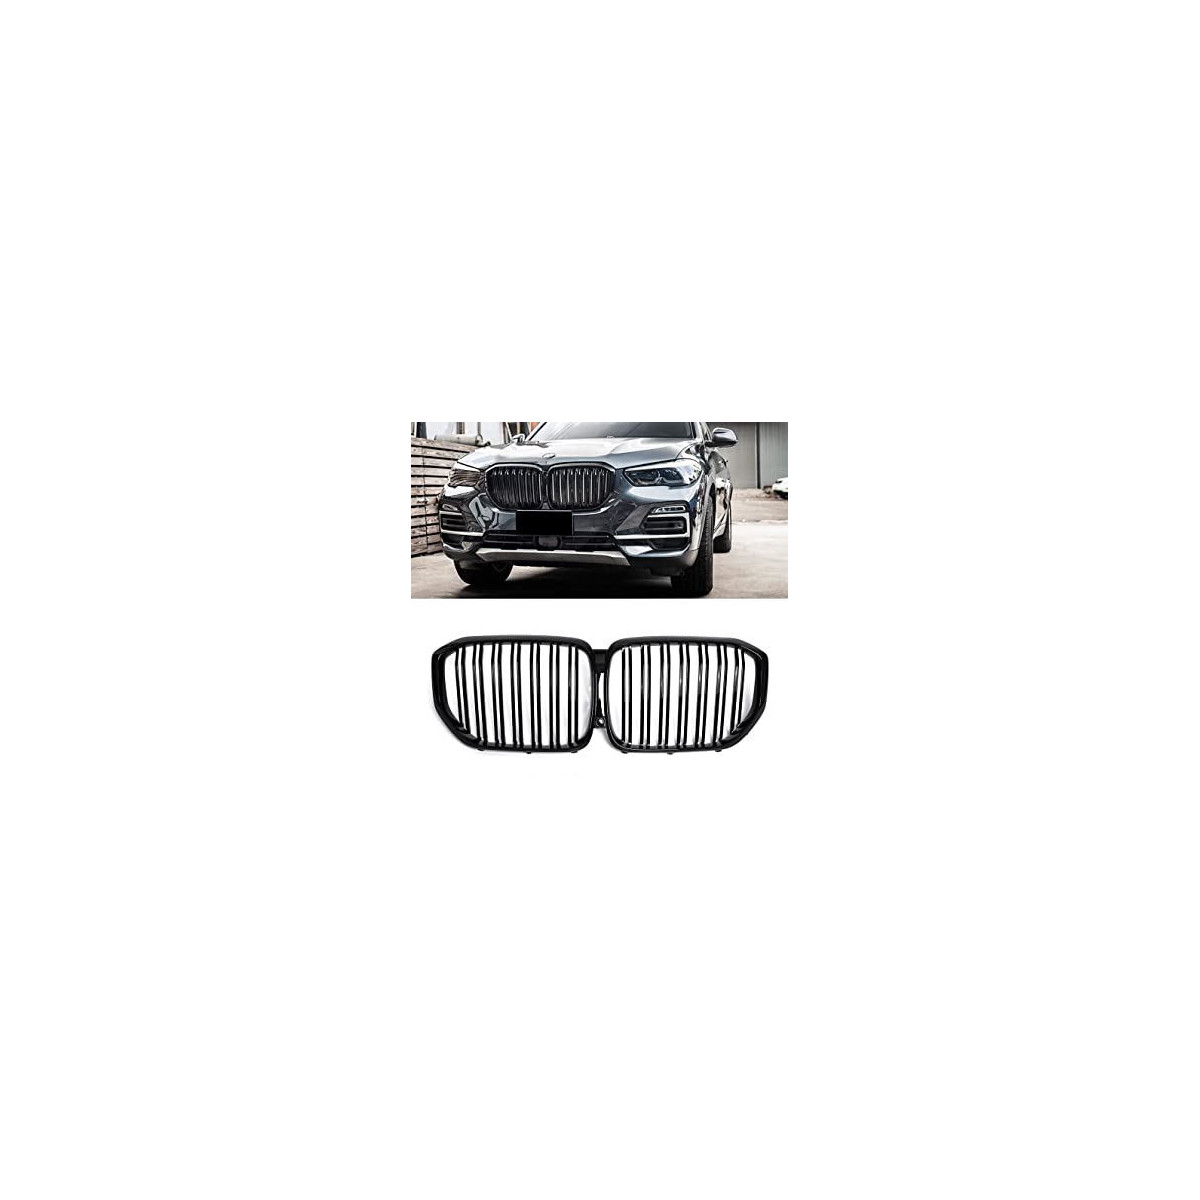 GRILL (NERKI) BMW X5 G05 11/2018- GLOSSY BLACK PIA